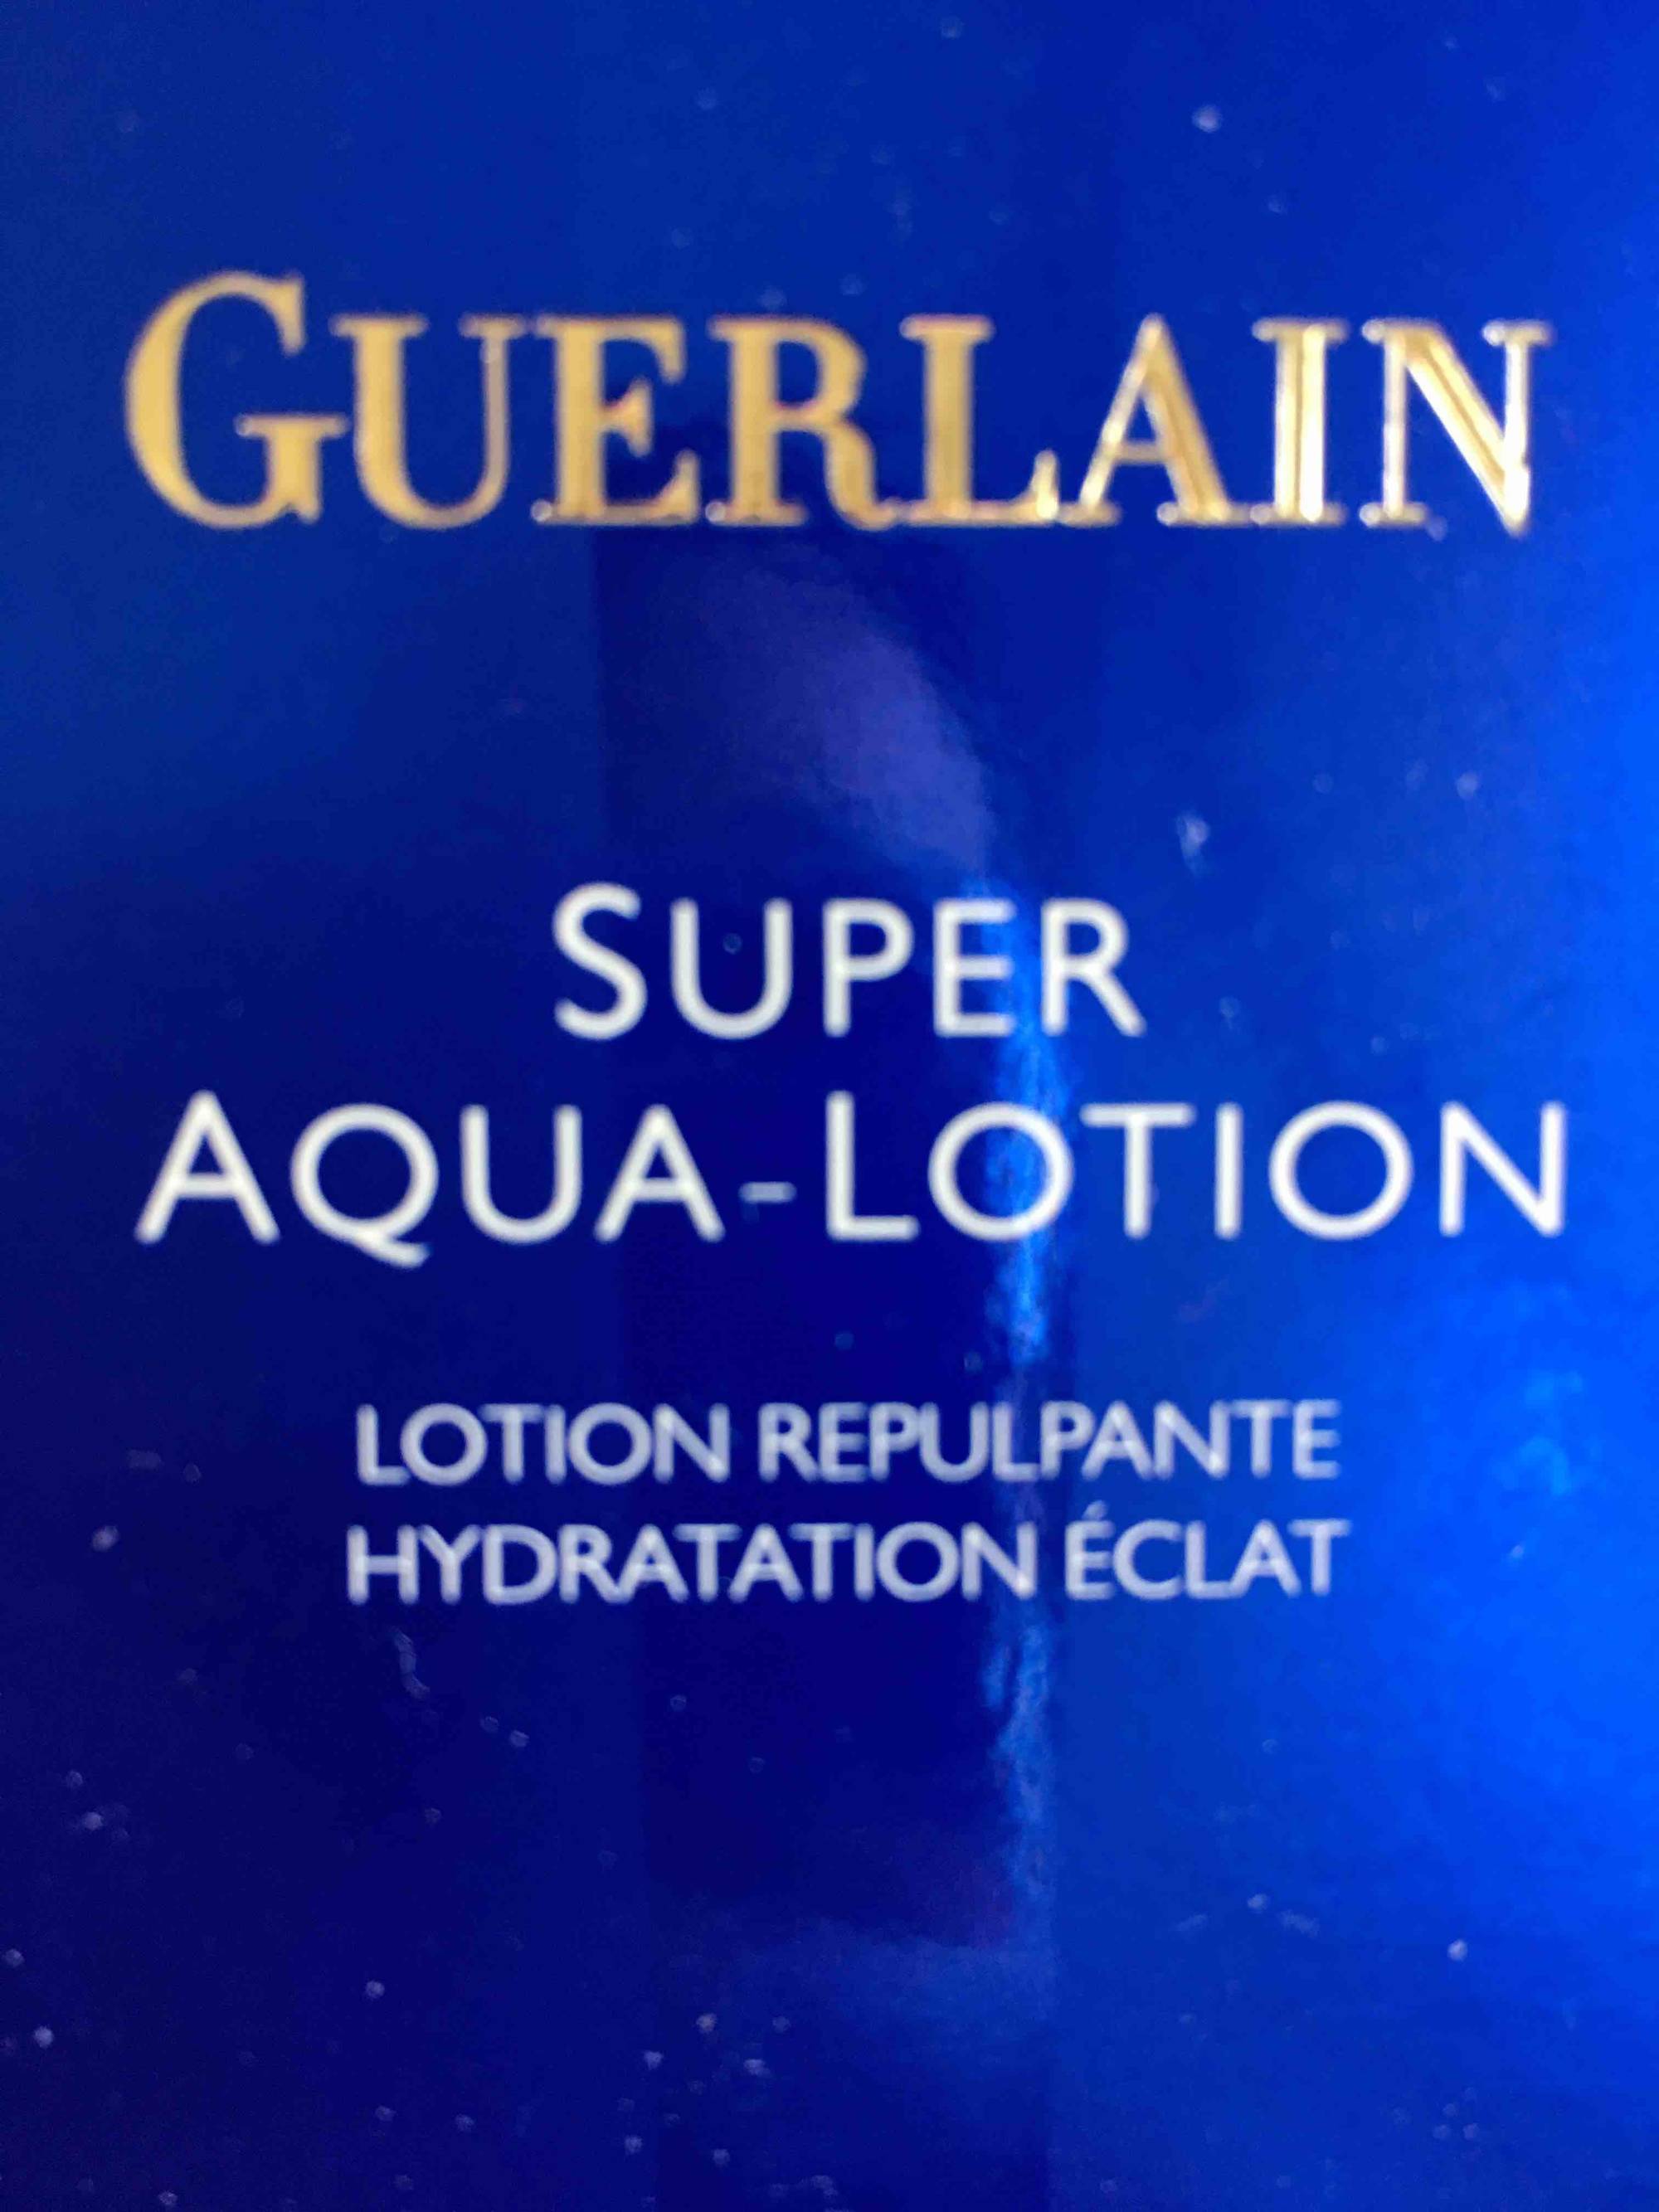 GUERLAIN - Super aqua-lotion - Lotion repulpante hydratation éclat